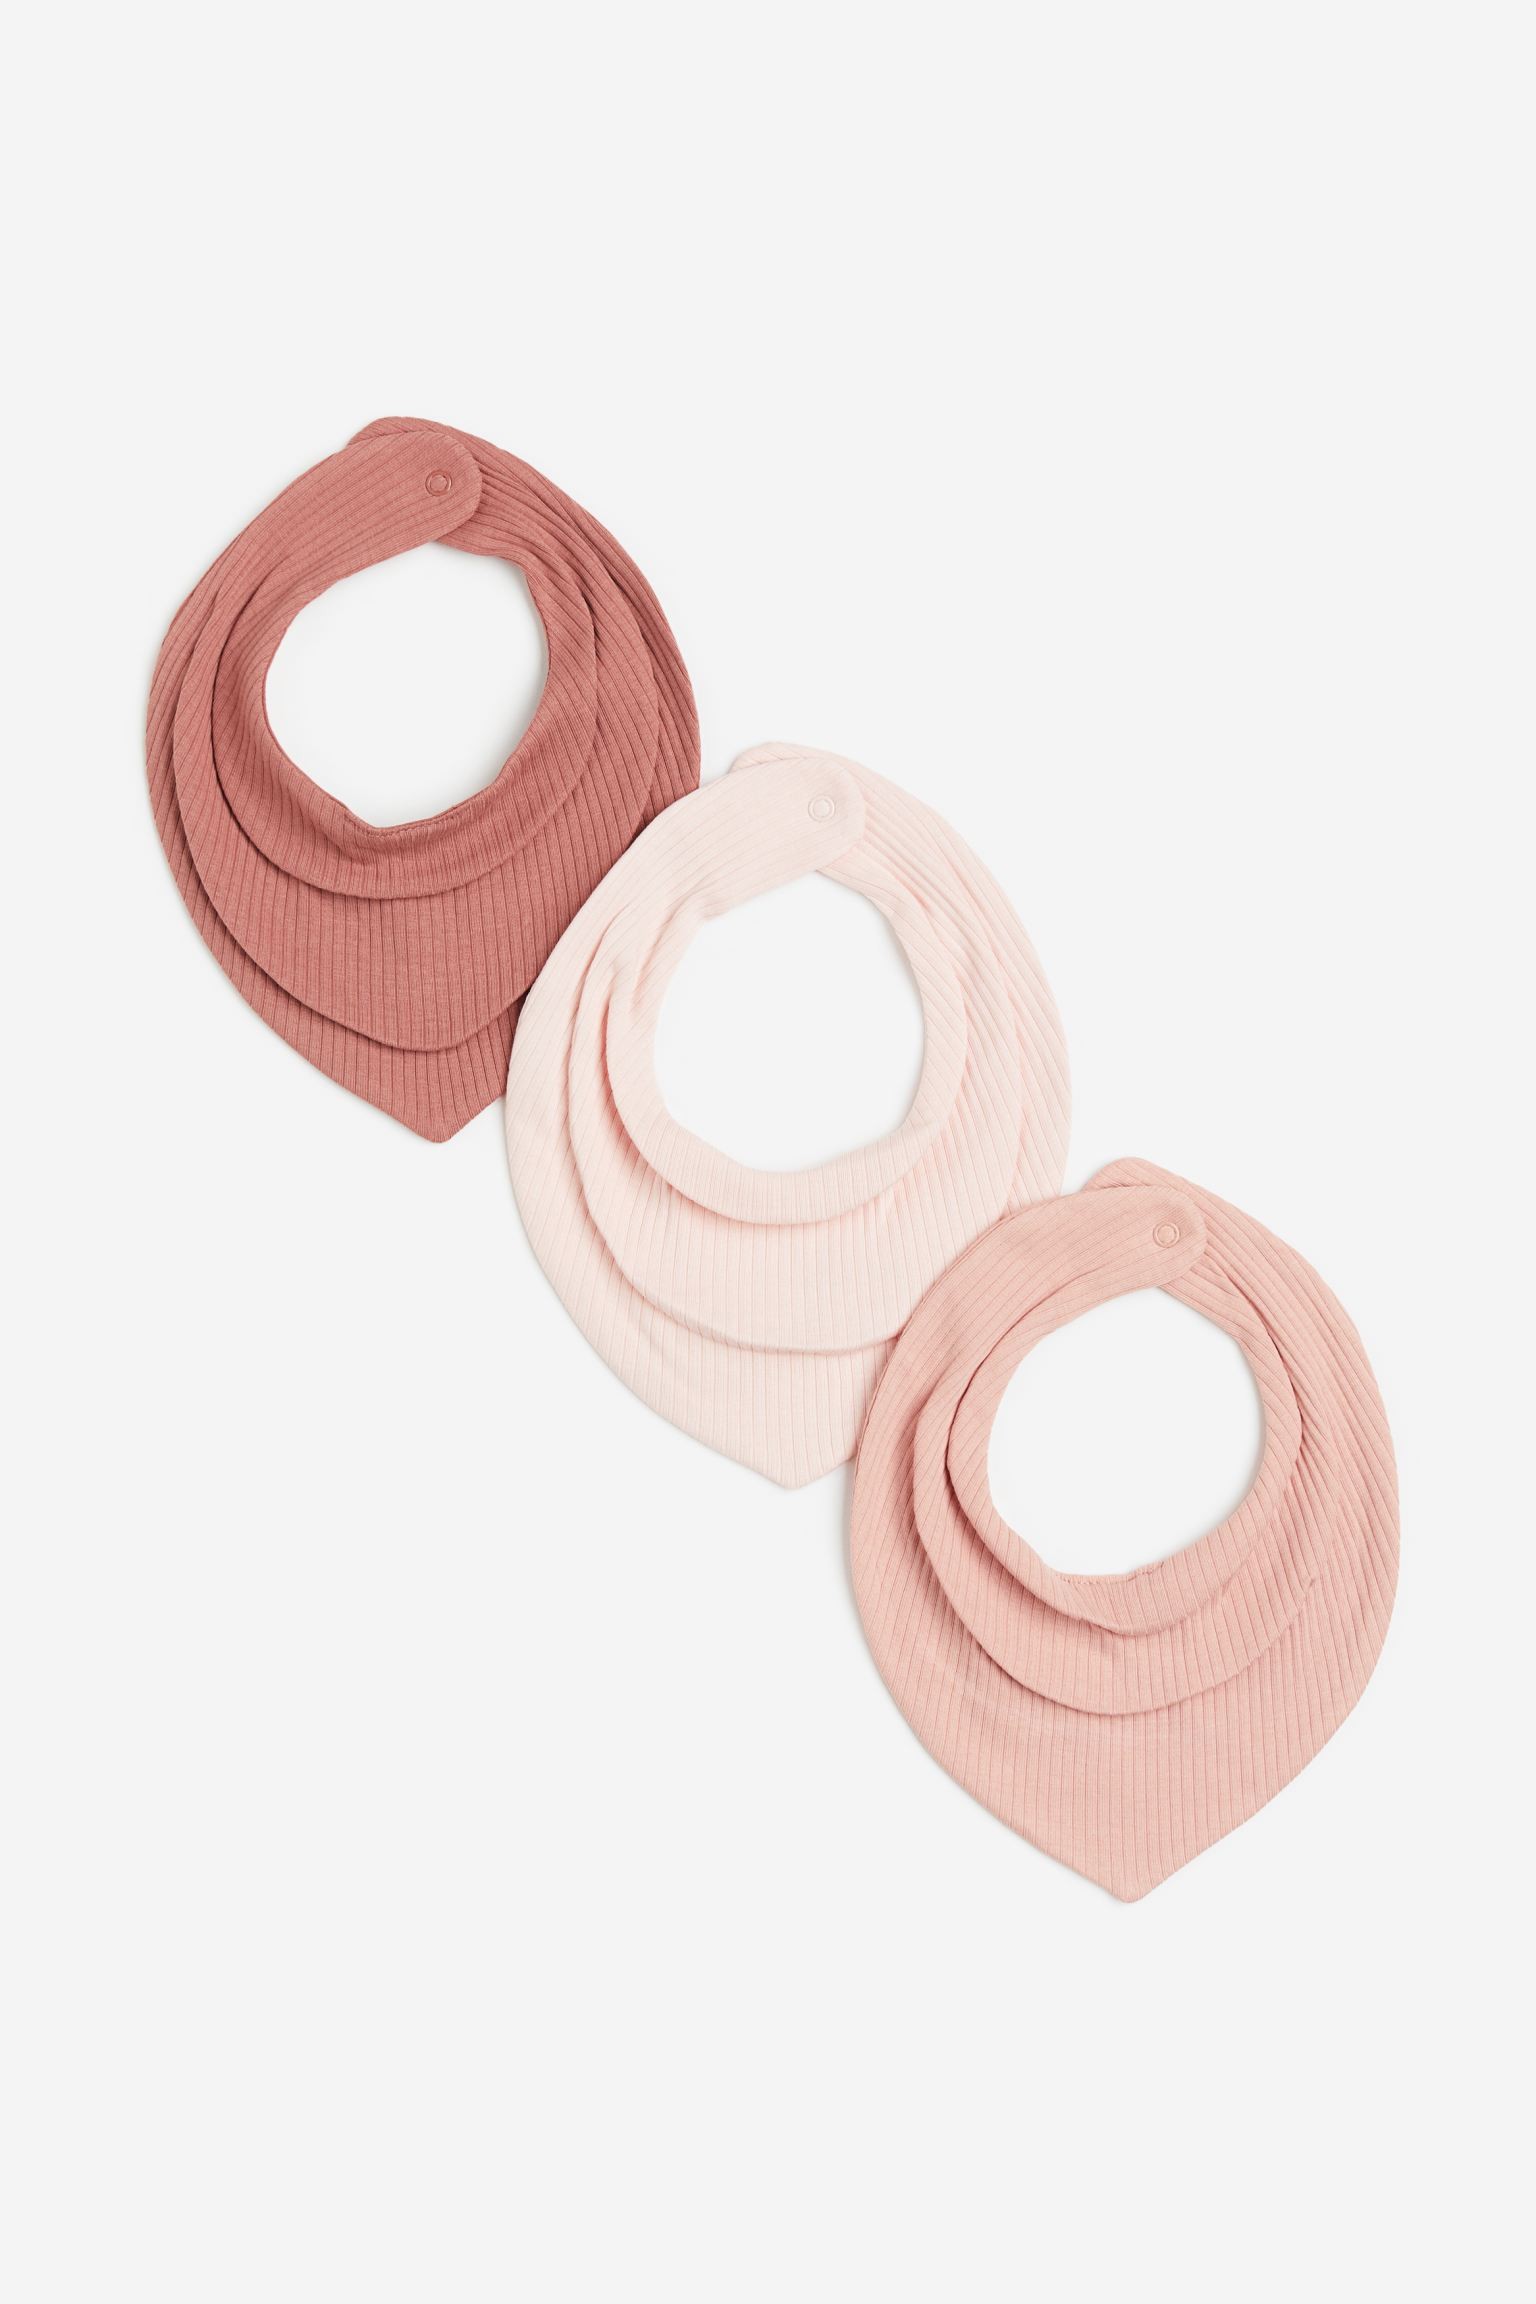 Трикутний шарф у смужки, 3 шт., Античний рожевий/Світло-рожевий, 19x19